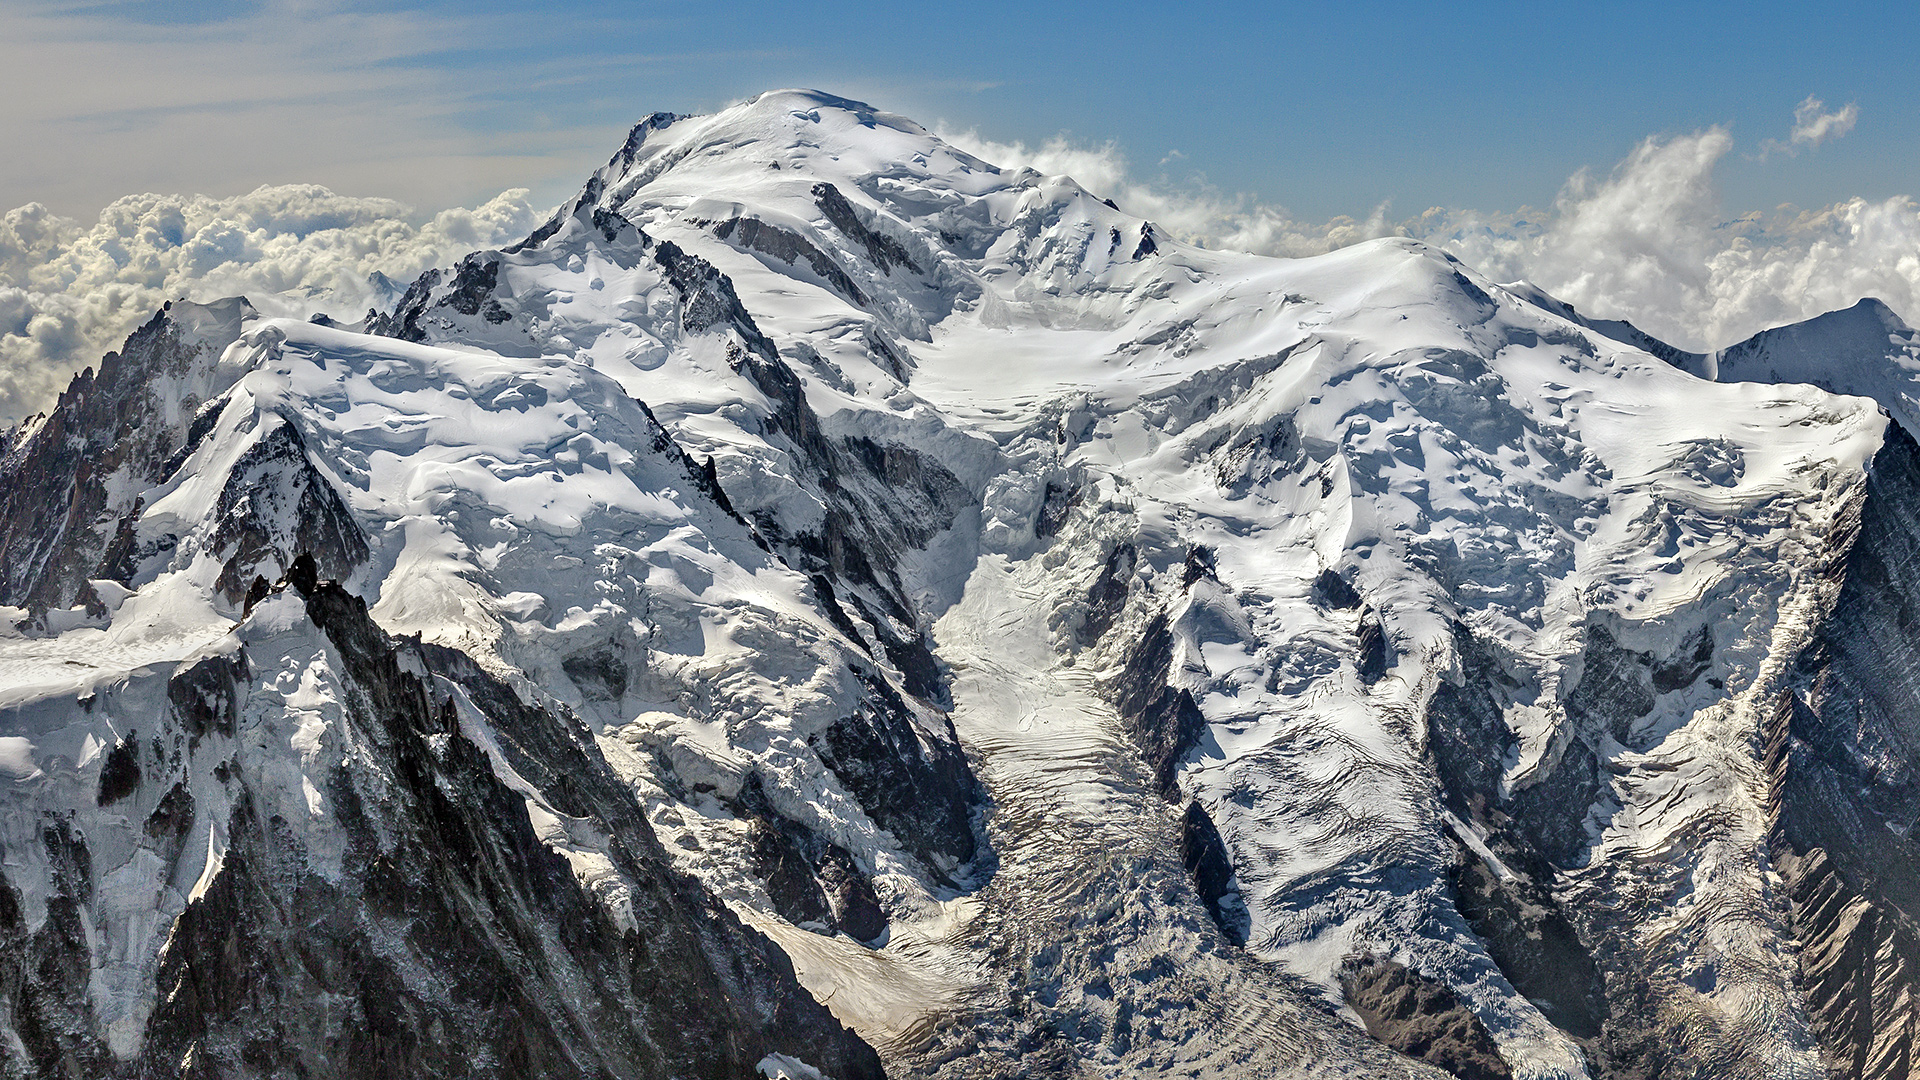 Der weiße Berg, mit 4.810m der höchste Berg in den Alpen, aber nicht der höchste Europas.